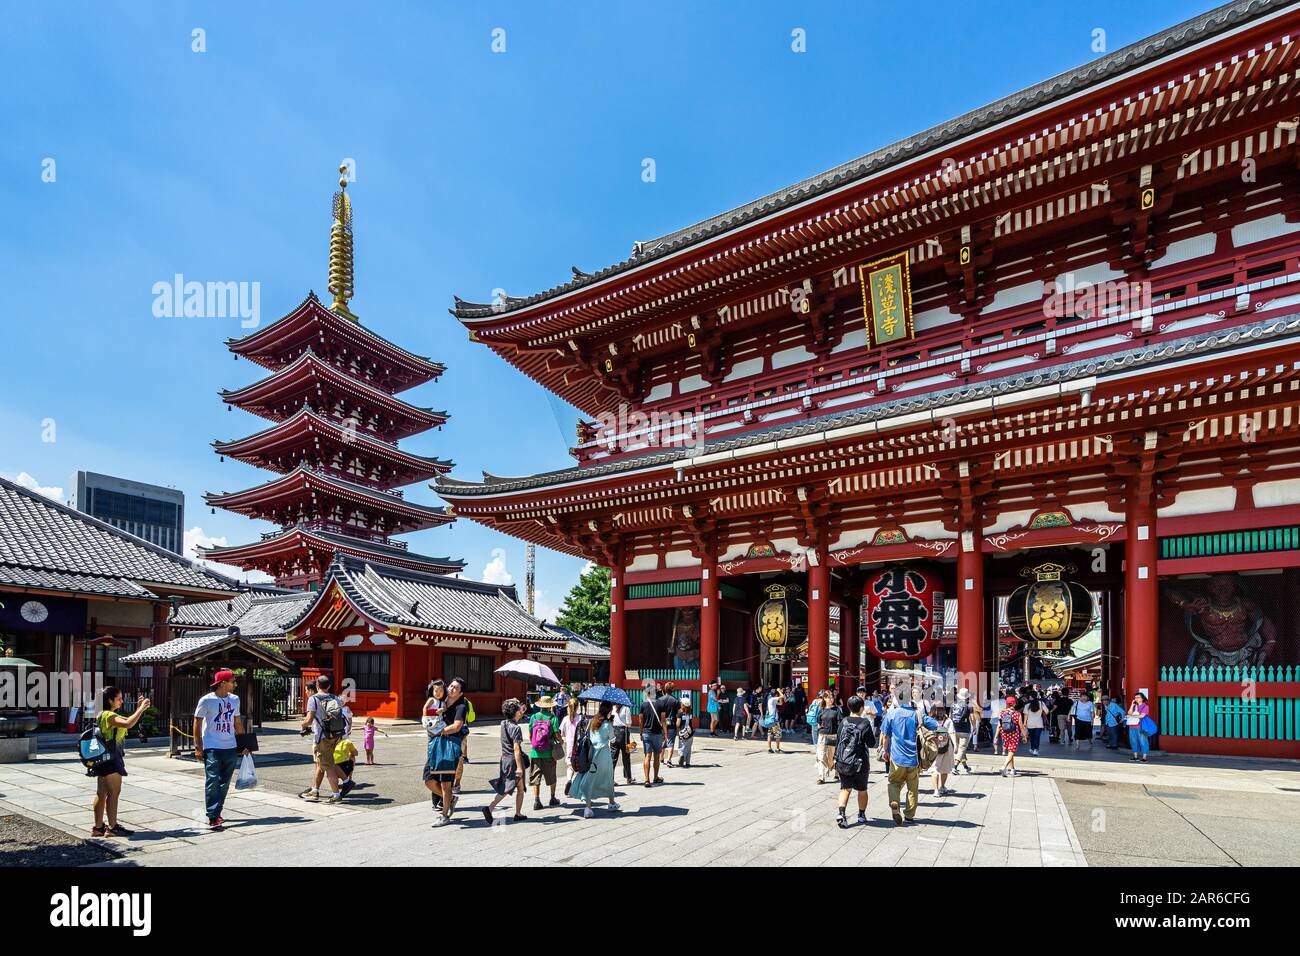 Entrée du temple Sensoji, le plus ancien temple bouddhiste de Tokyo et un monument touristique populaire. Tokyo, Japon, Août 2019 Banque D'Images